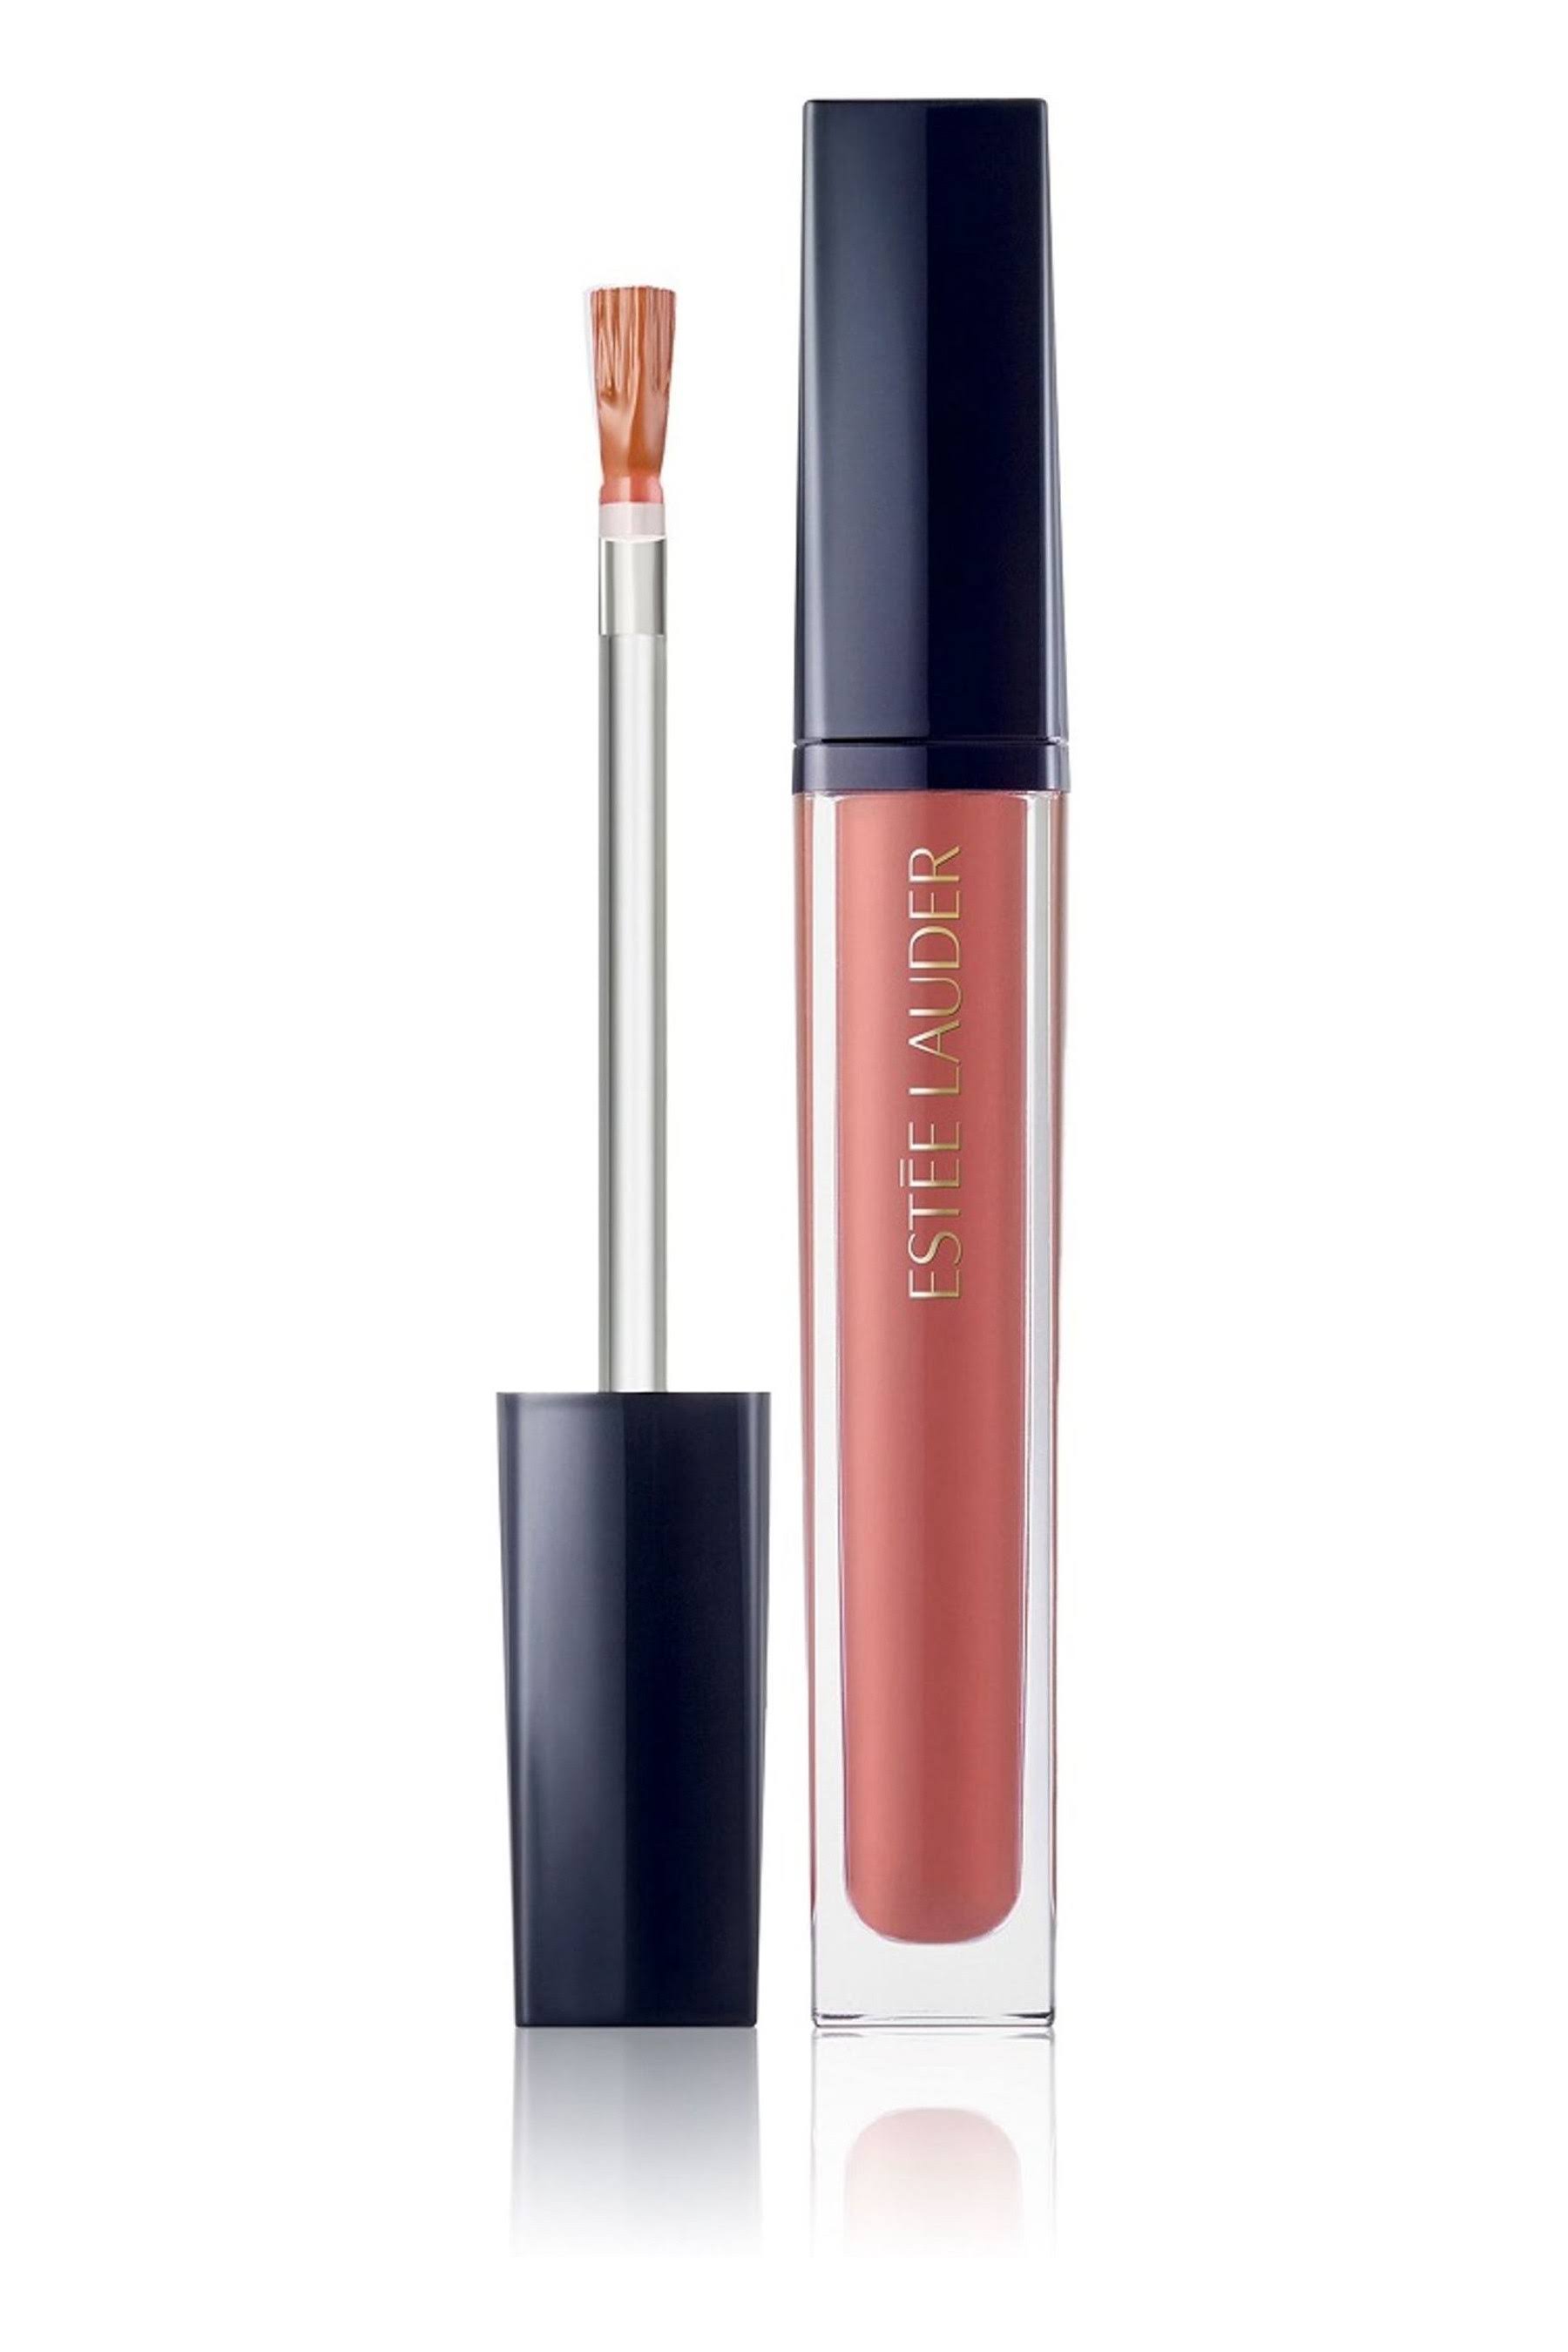 Estee lauder - pure color envy kissable lip shine 5,8ml